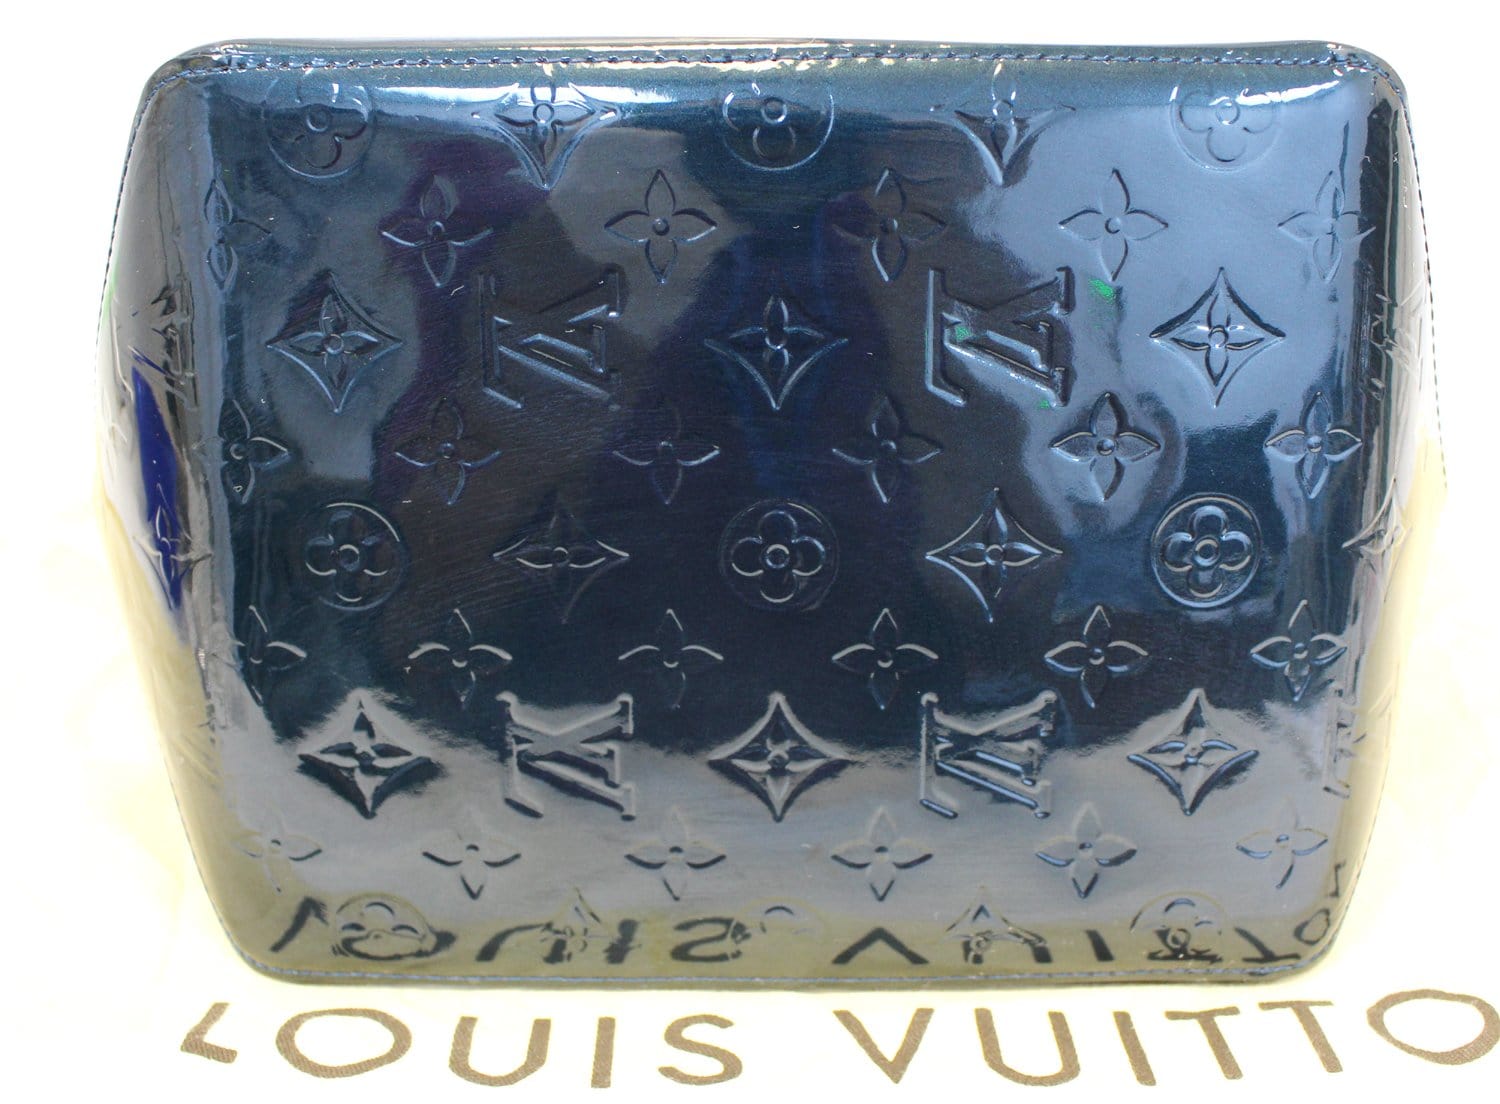 LOUIS VUITTON Monogram Vernis Bellevue PM Hand Bag Violet M93584